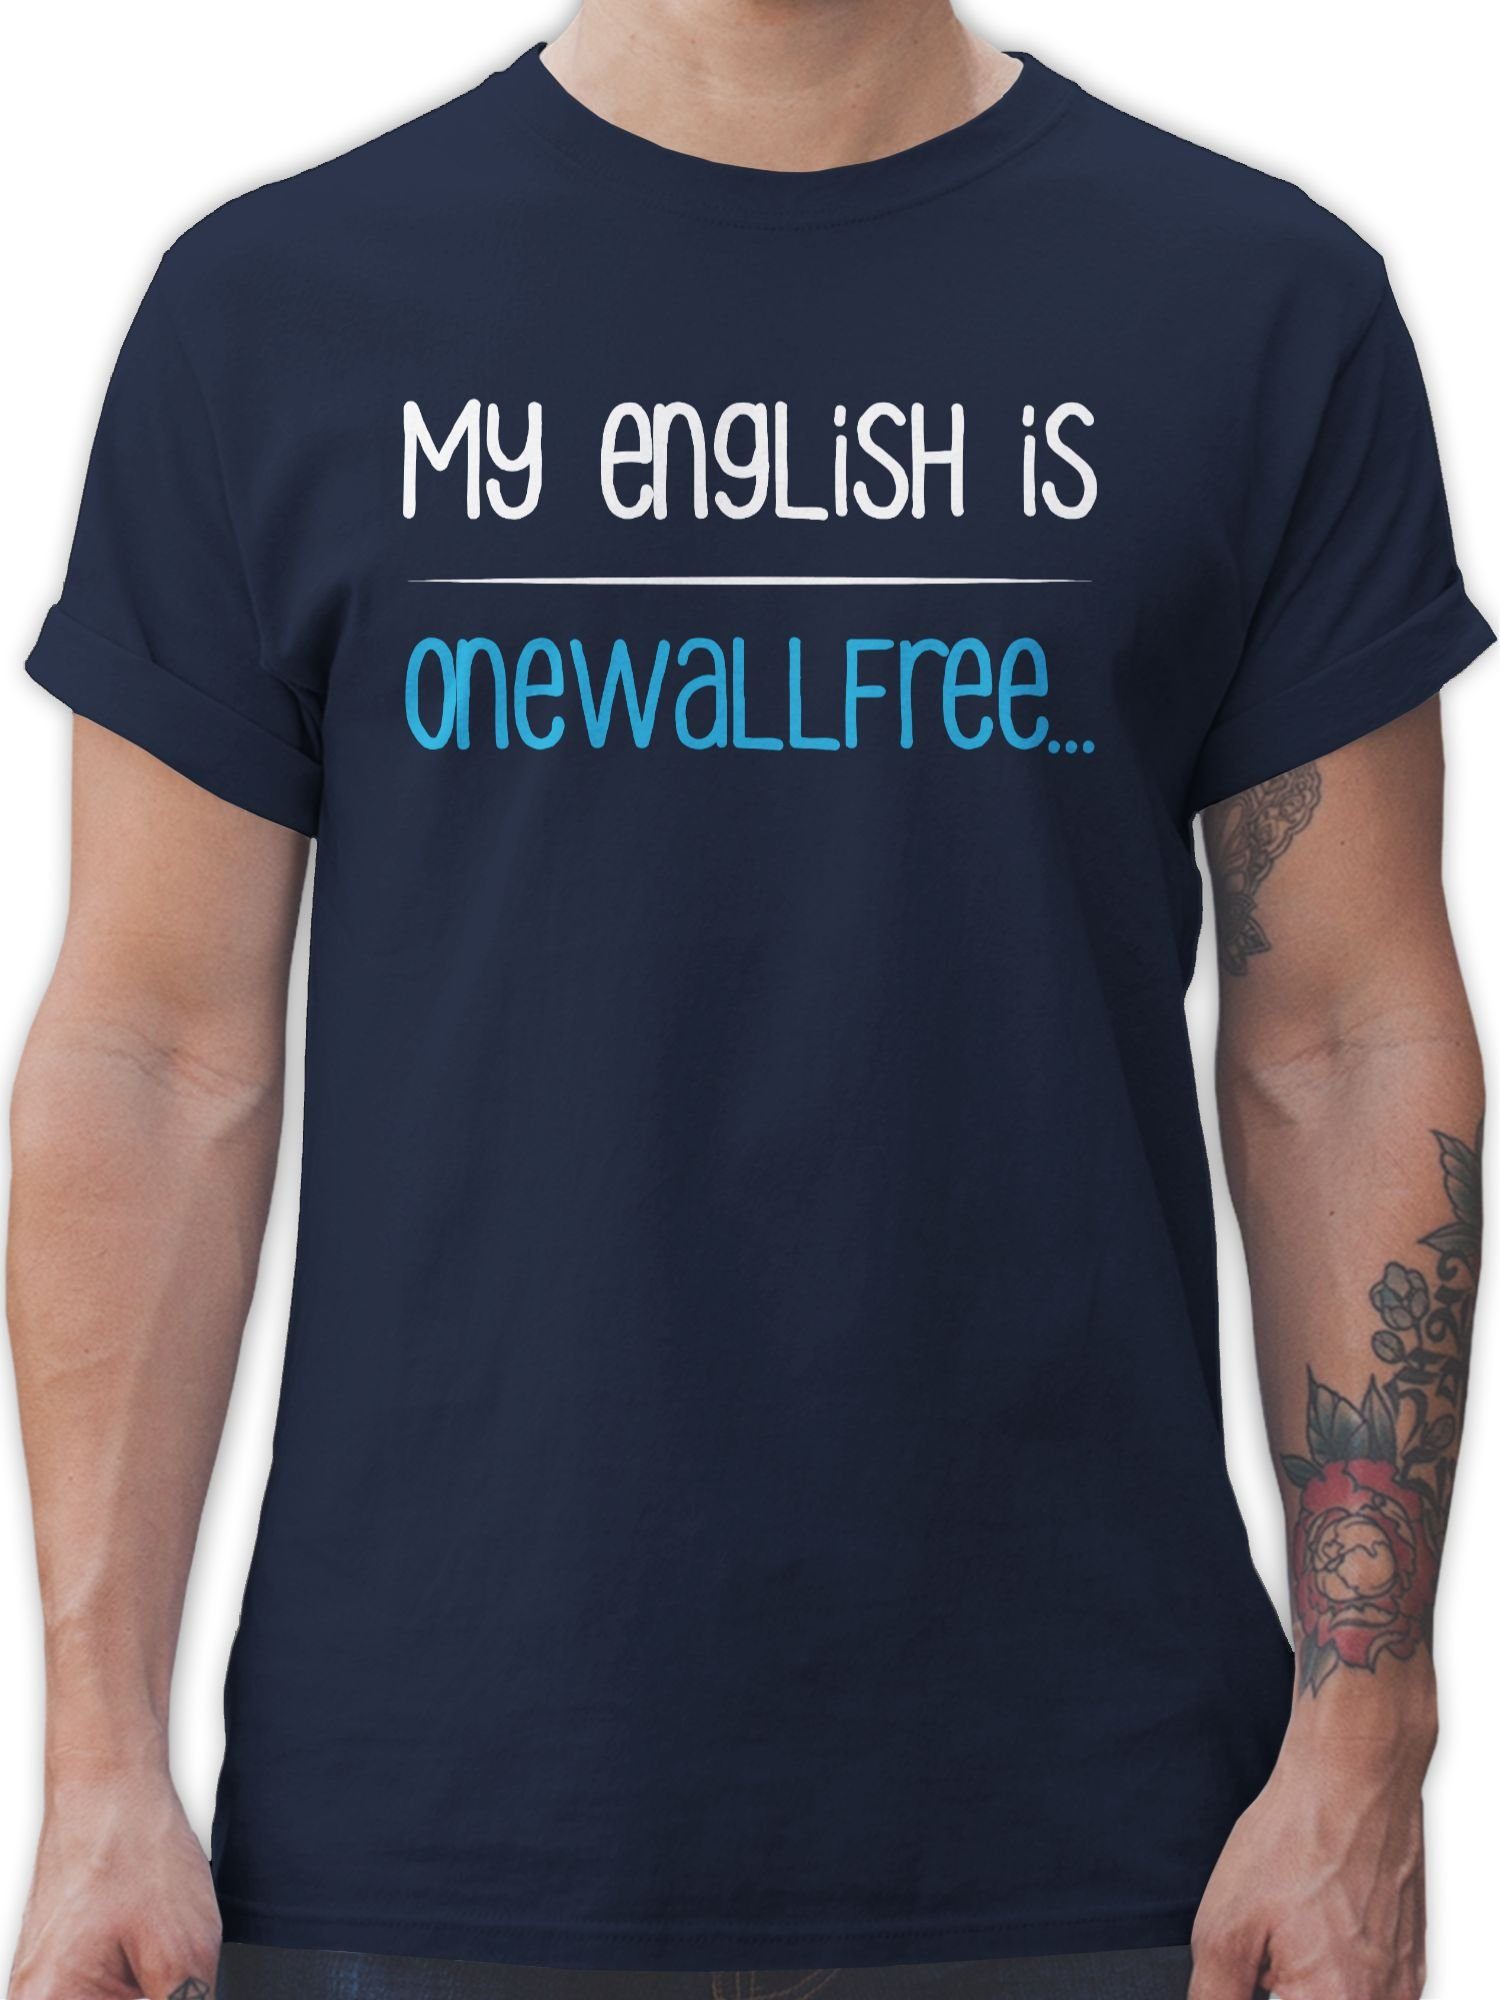 Shirtracer T-Shirt My english is onewallfree - Denglisch Sprüche Statement mit Spruch 01 Navy Blau | T-Shirts